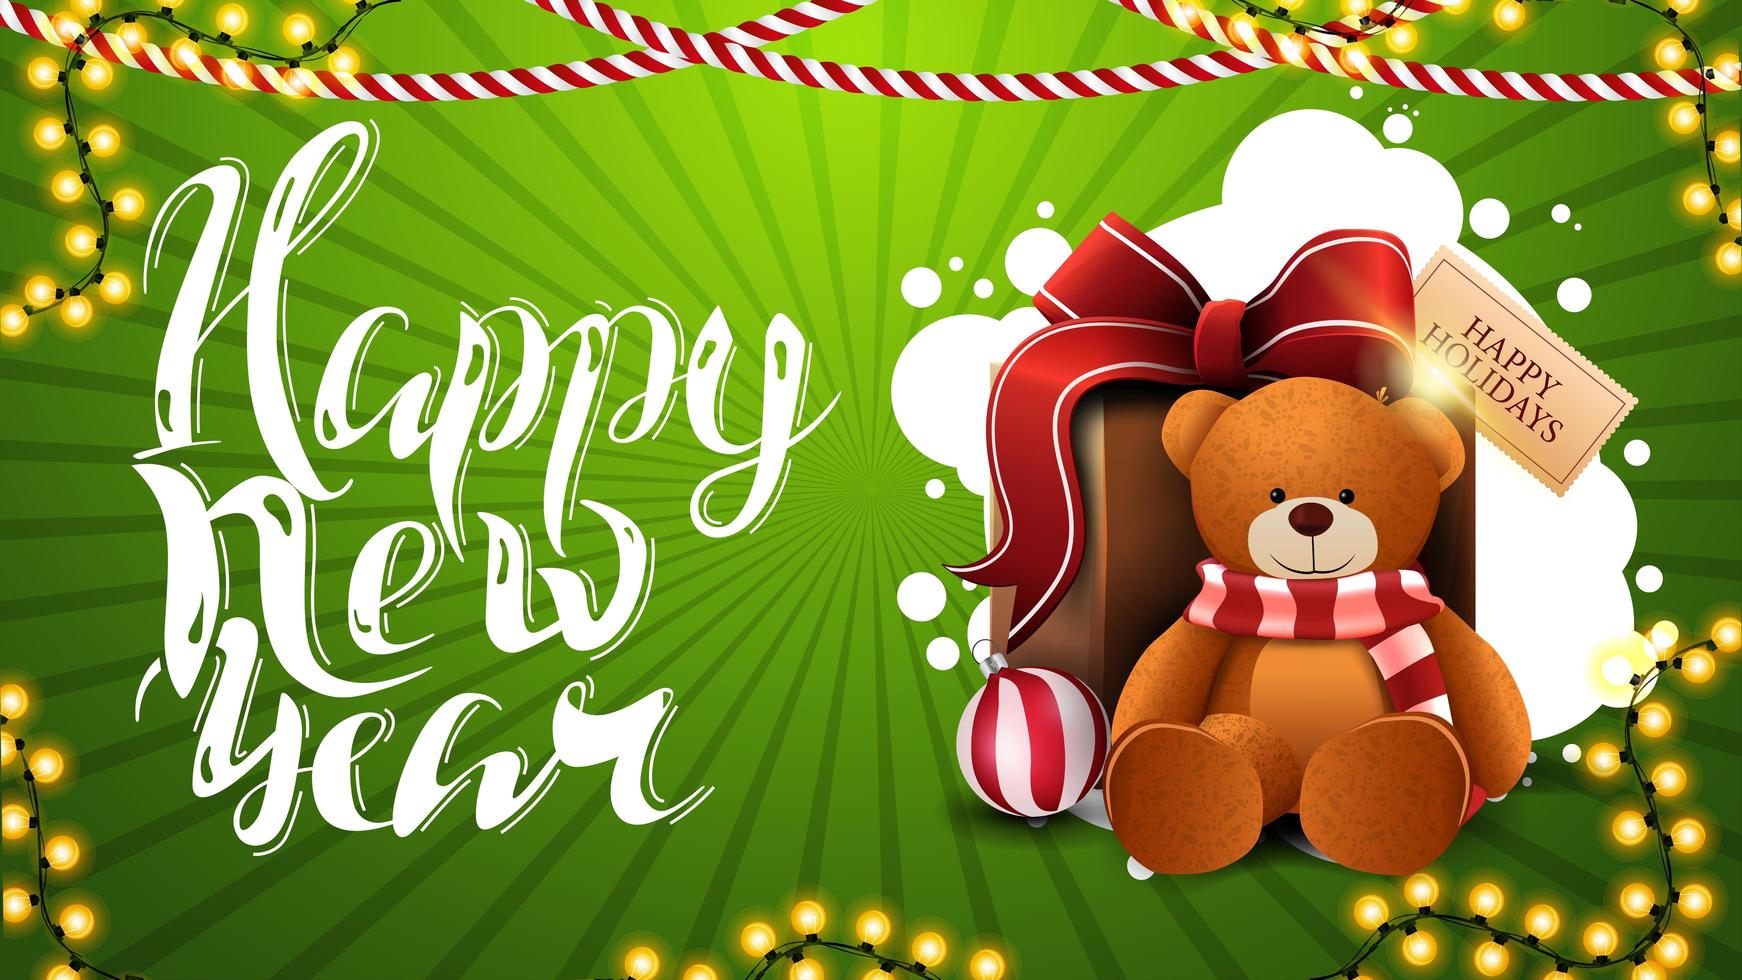 bonne année, carte de voeux horizontale verte avec beau lettrage, décor de Noël et cadeau avec ours en peluche vecteur